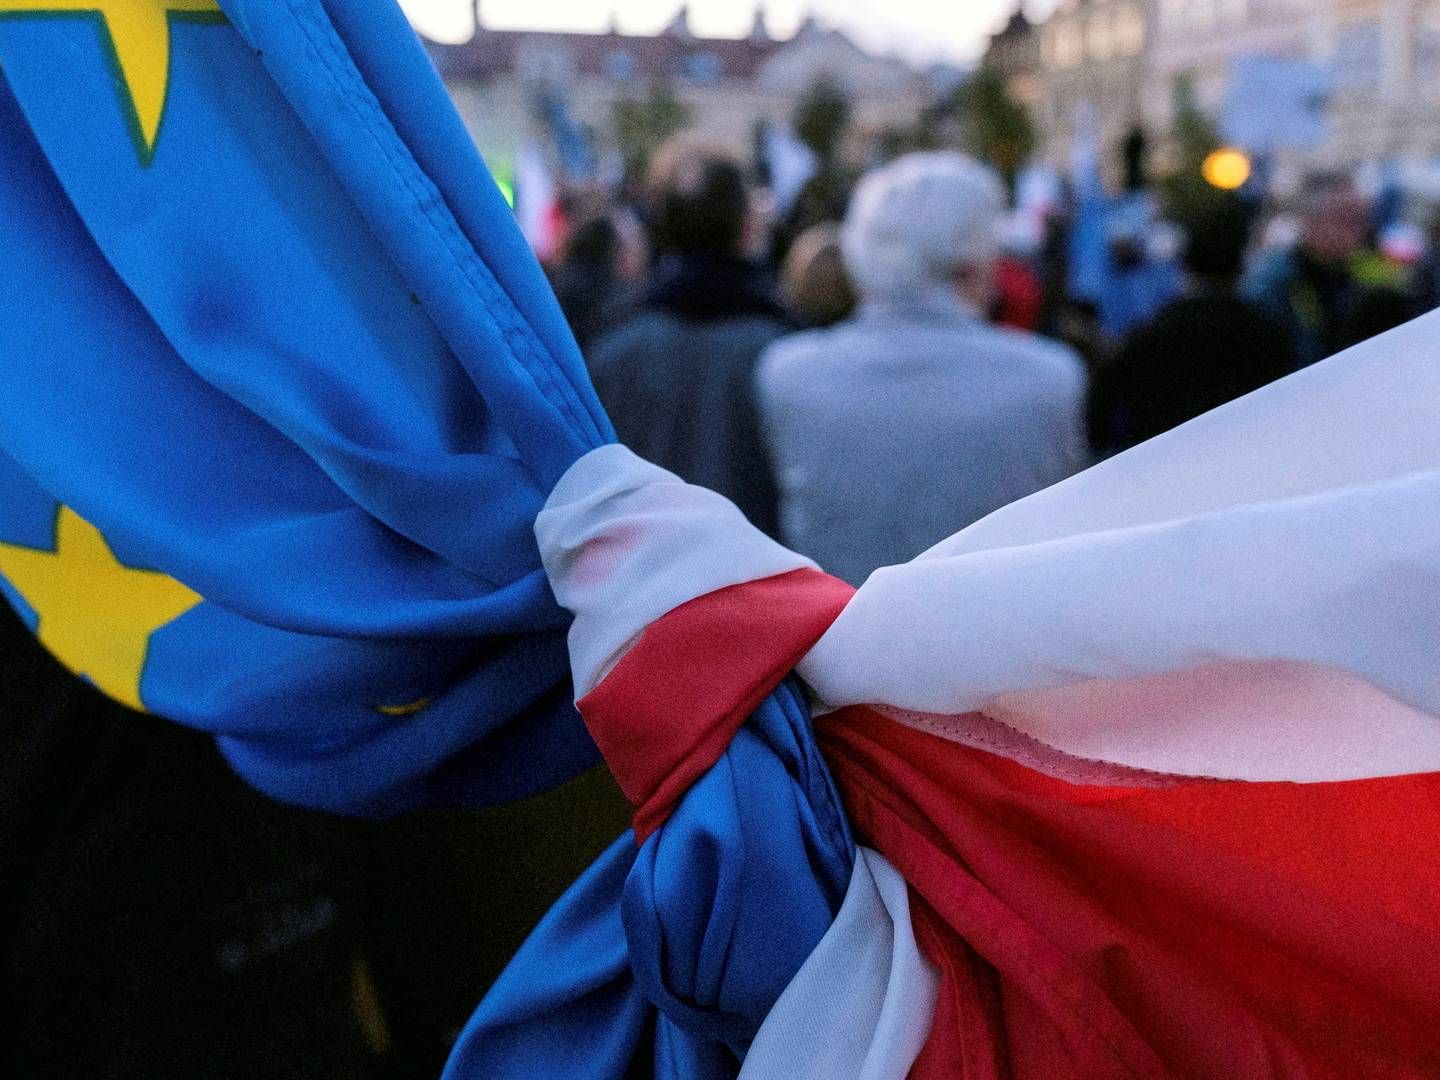 Forholdet mellem EU og Polen slår revner, efter landets regering har gennemført en række reformer af retssystemet. | Foto: PATRYK OGORZALEK/Agencja Gazeta via REUTERS / X02731